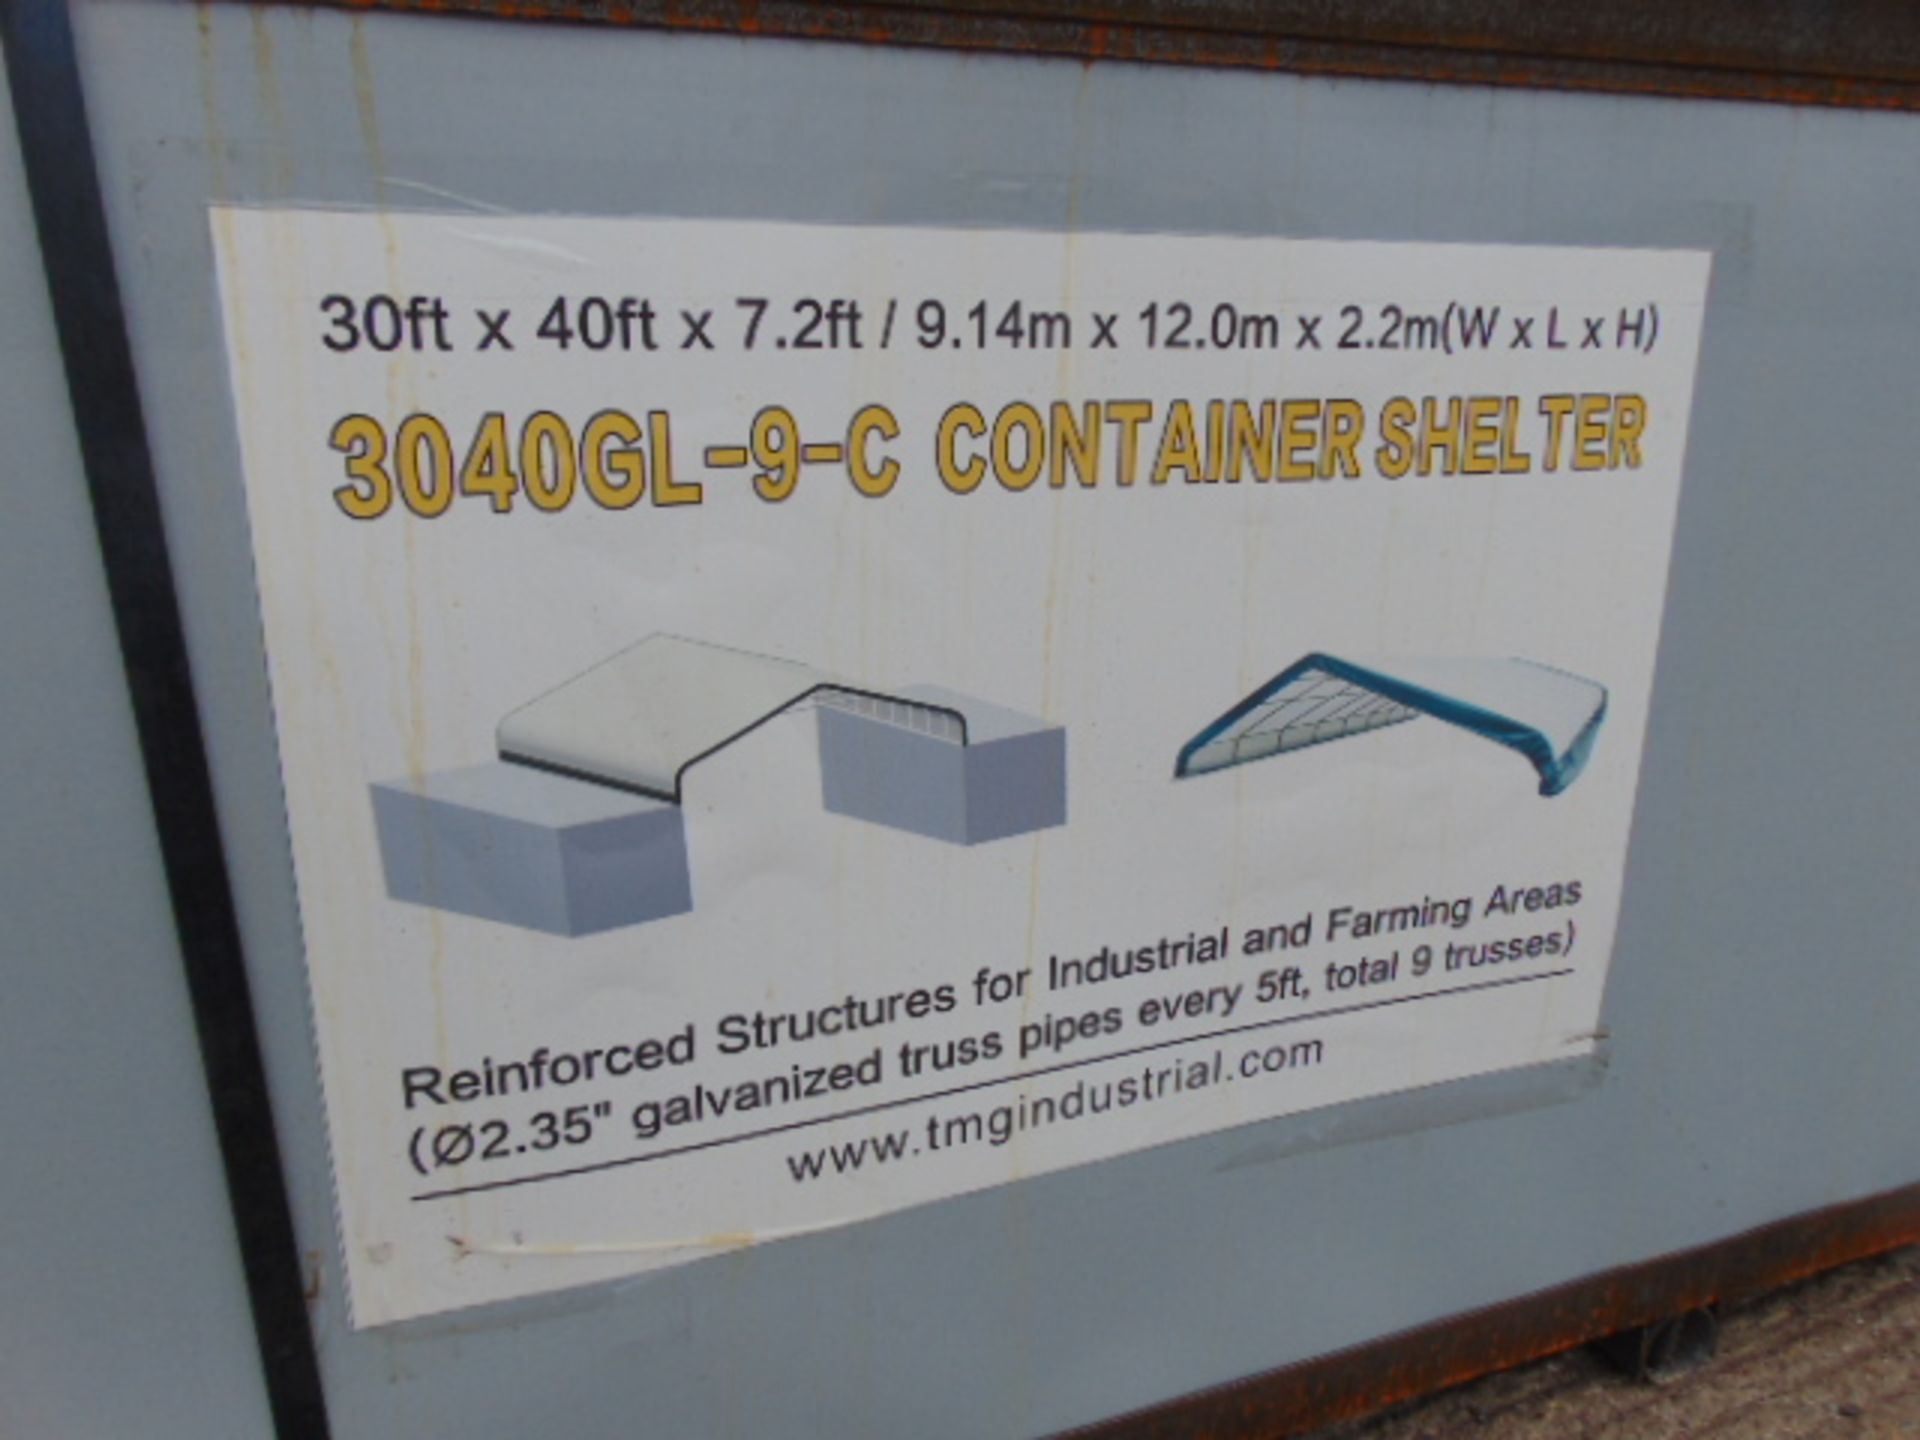 Container Shelter 30'W x 40'L x 7.2' H P/No 3040GL-9-C - Image 5 of 6